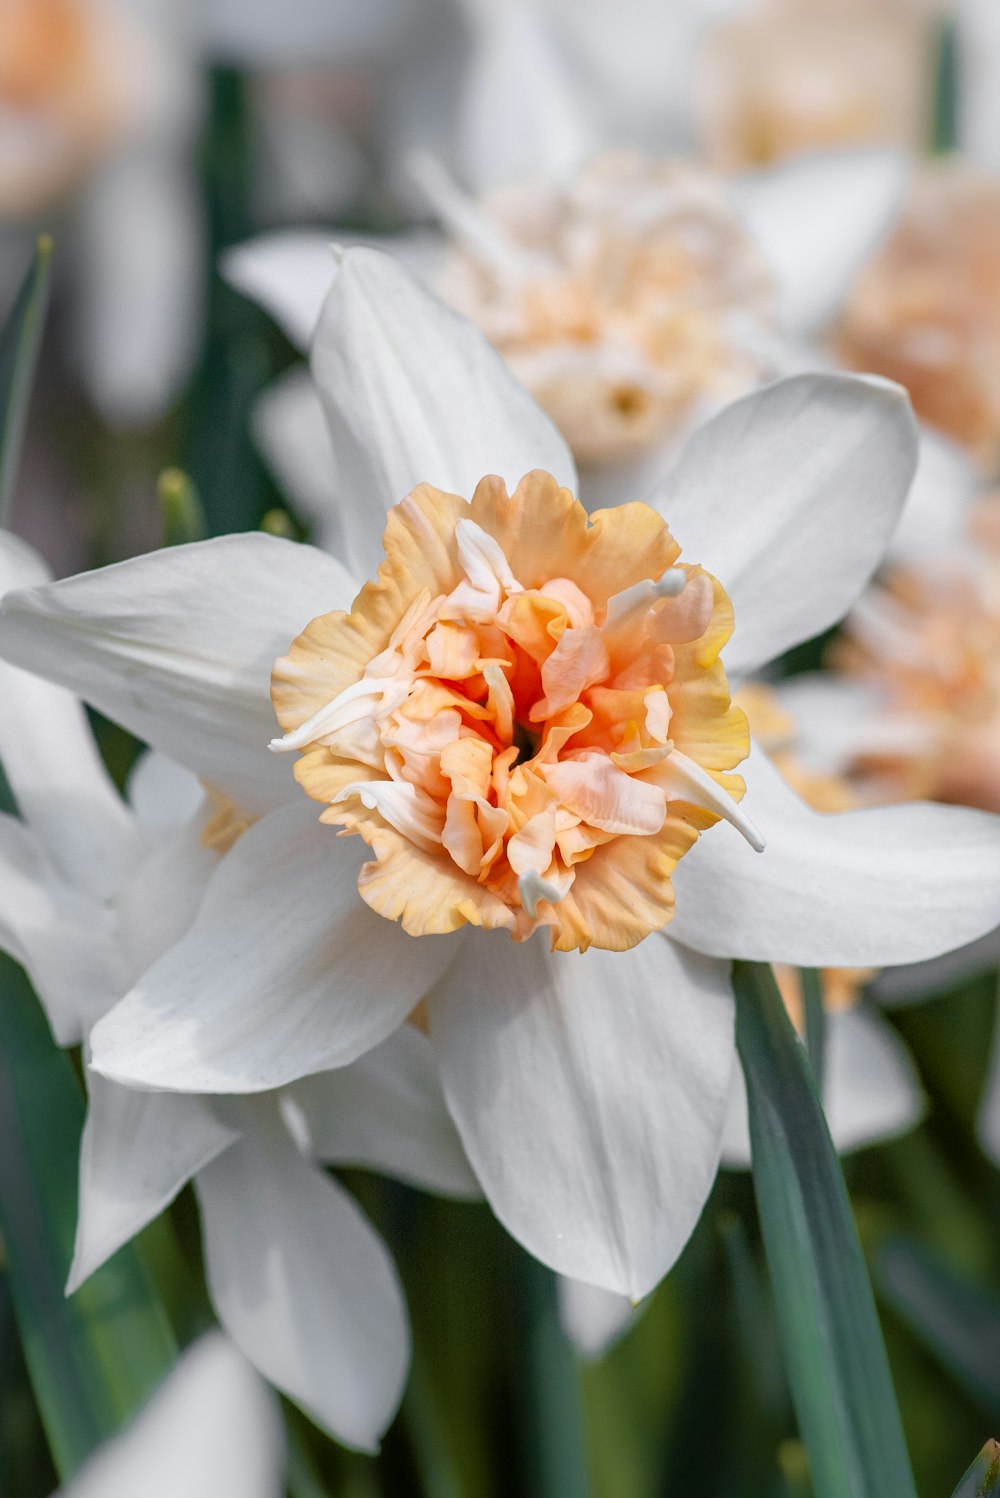 fiore bianco e arancione in macro shot